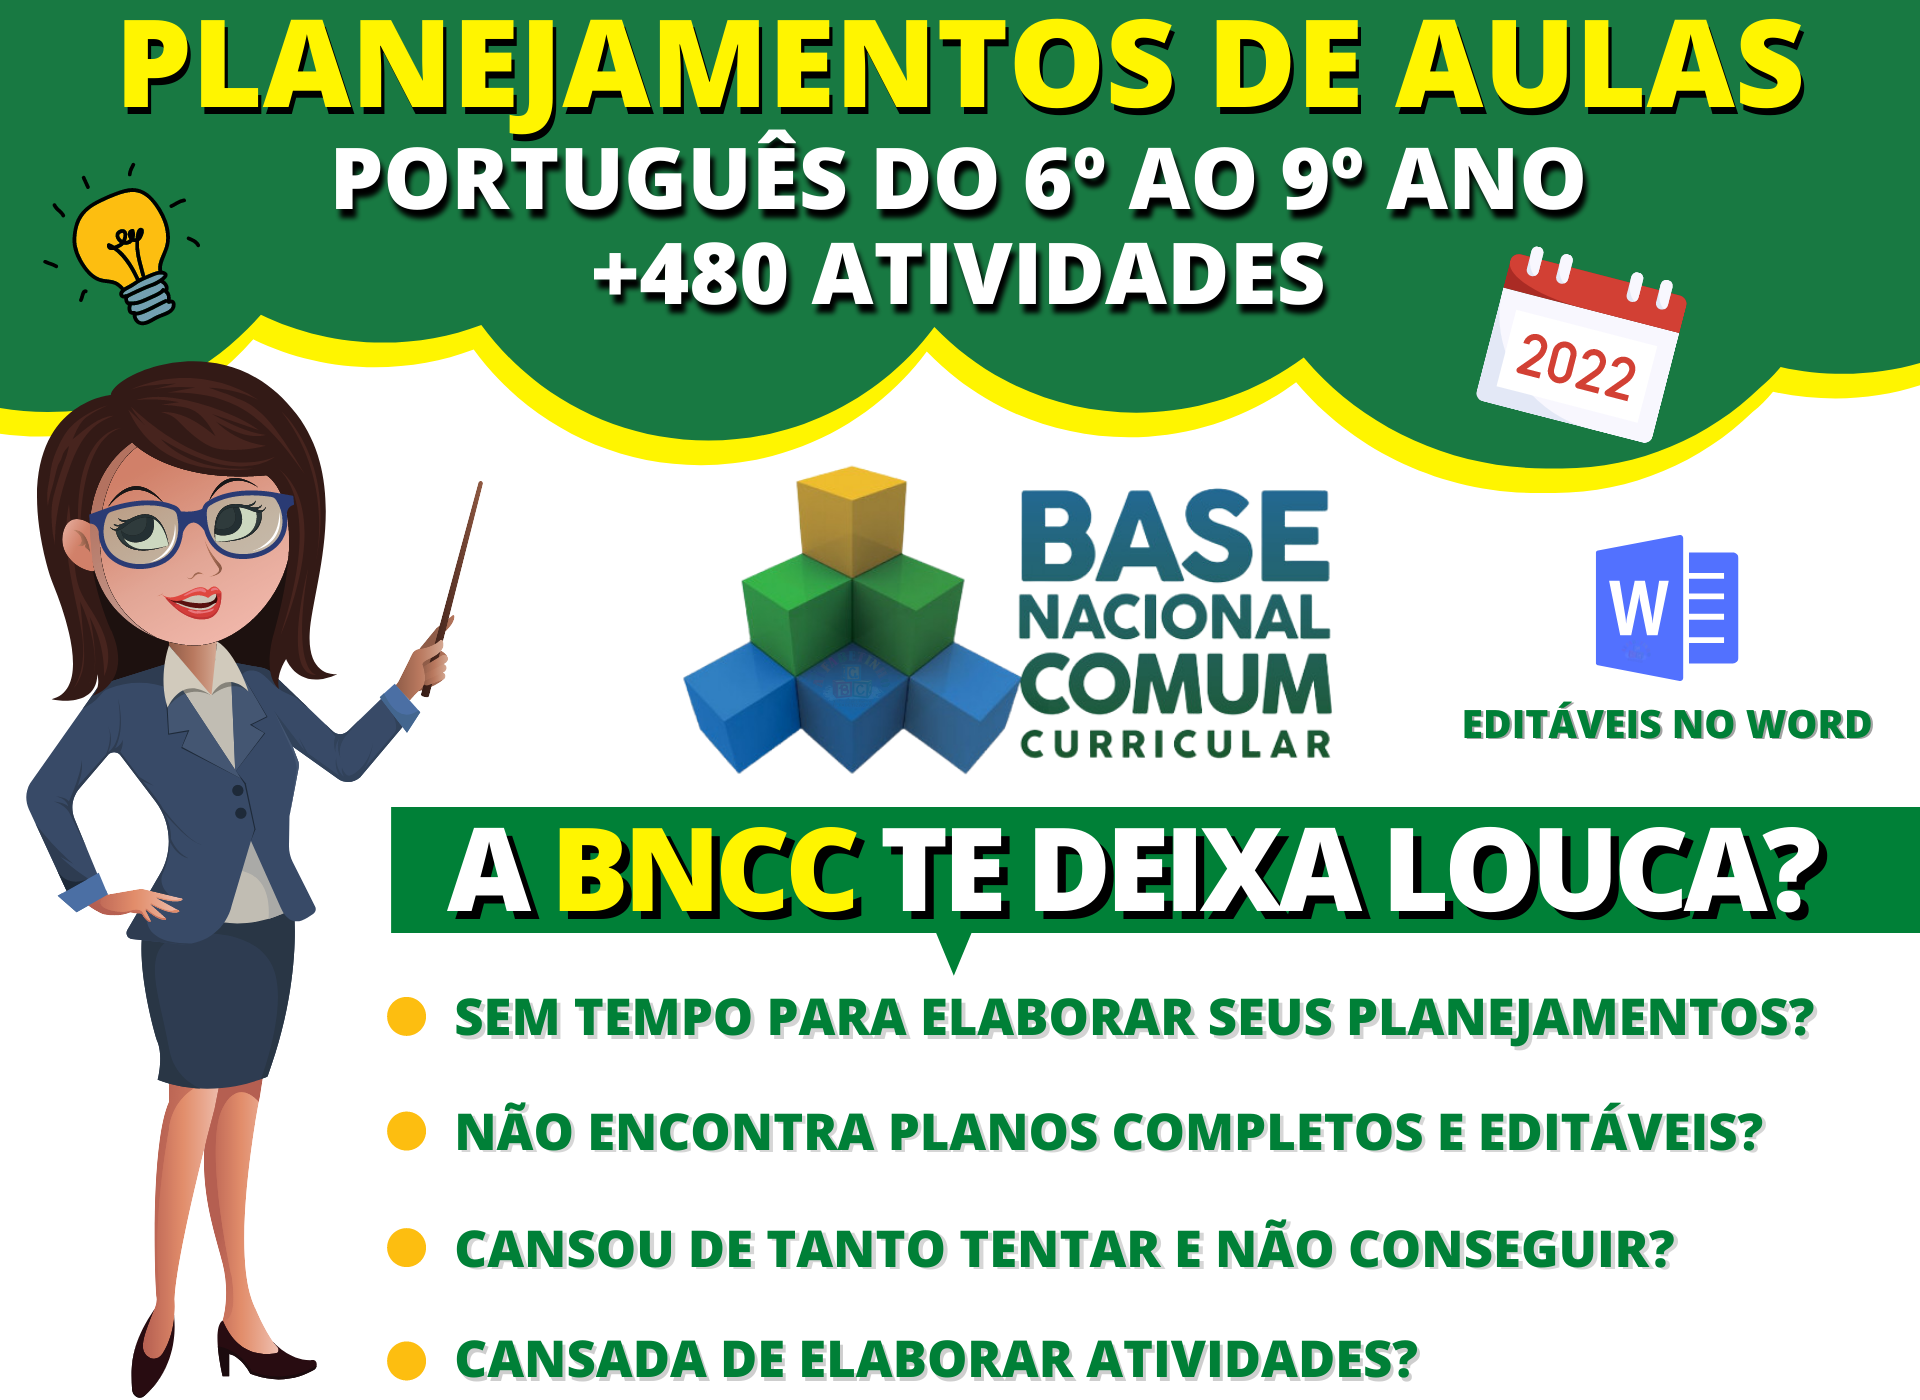 Planejamentos de Aulas de Língua Portuguesa do 6º ao 9º ano BNCC tem cupom de desconto